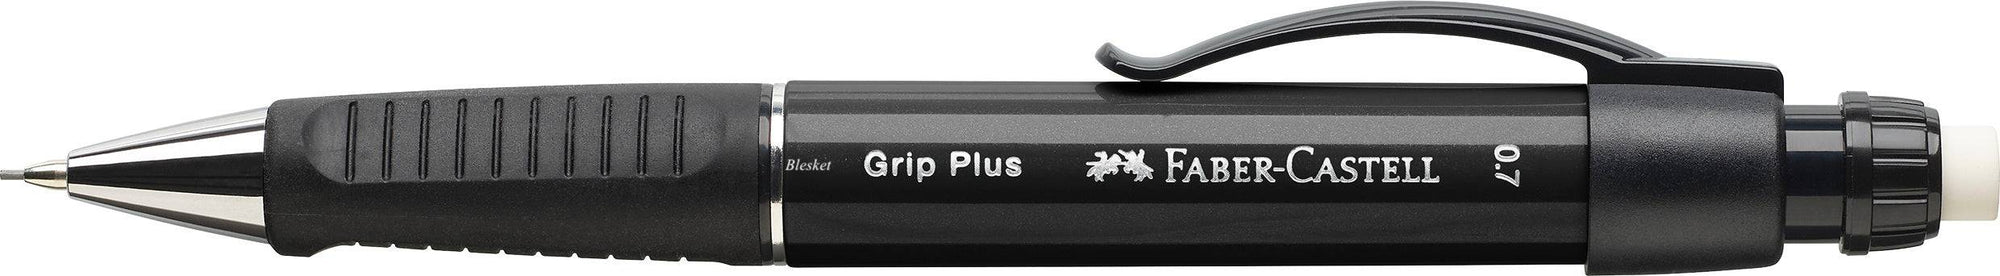 Grip Plus Mechanical Pencil 0.7mm - Blesket Canada